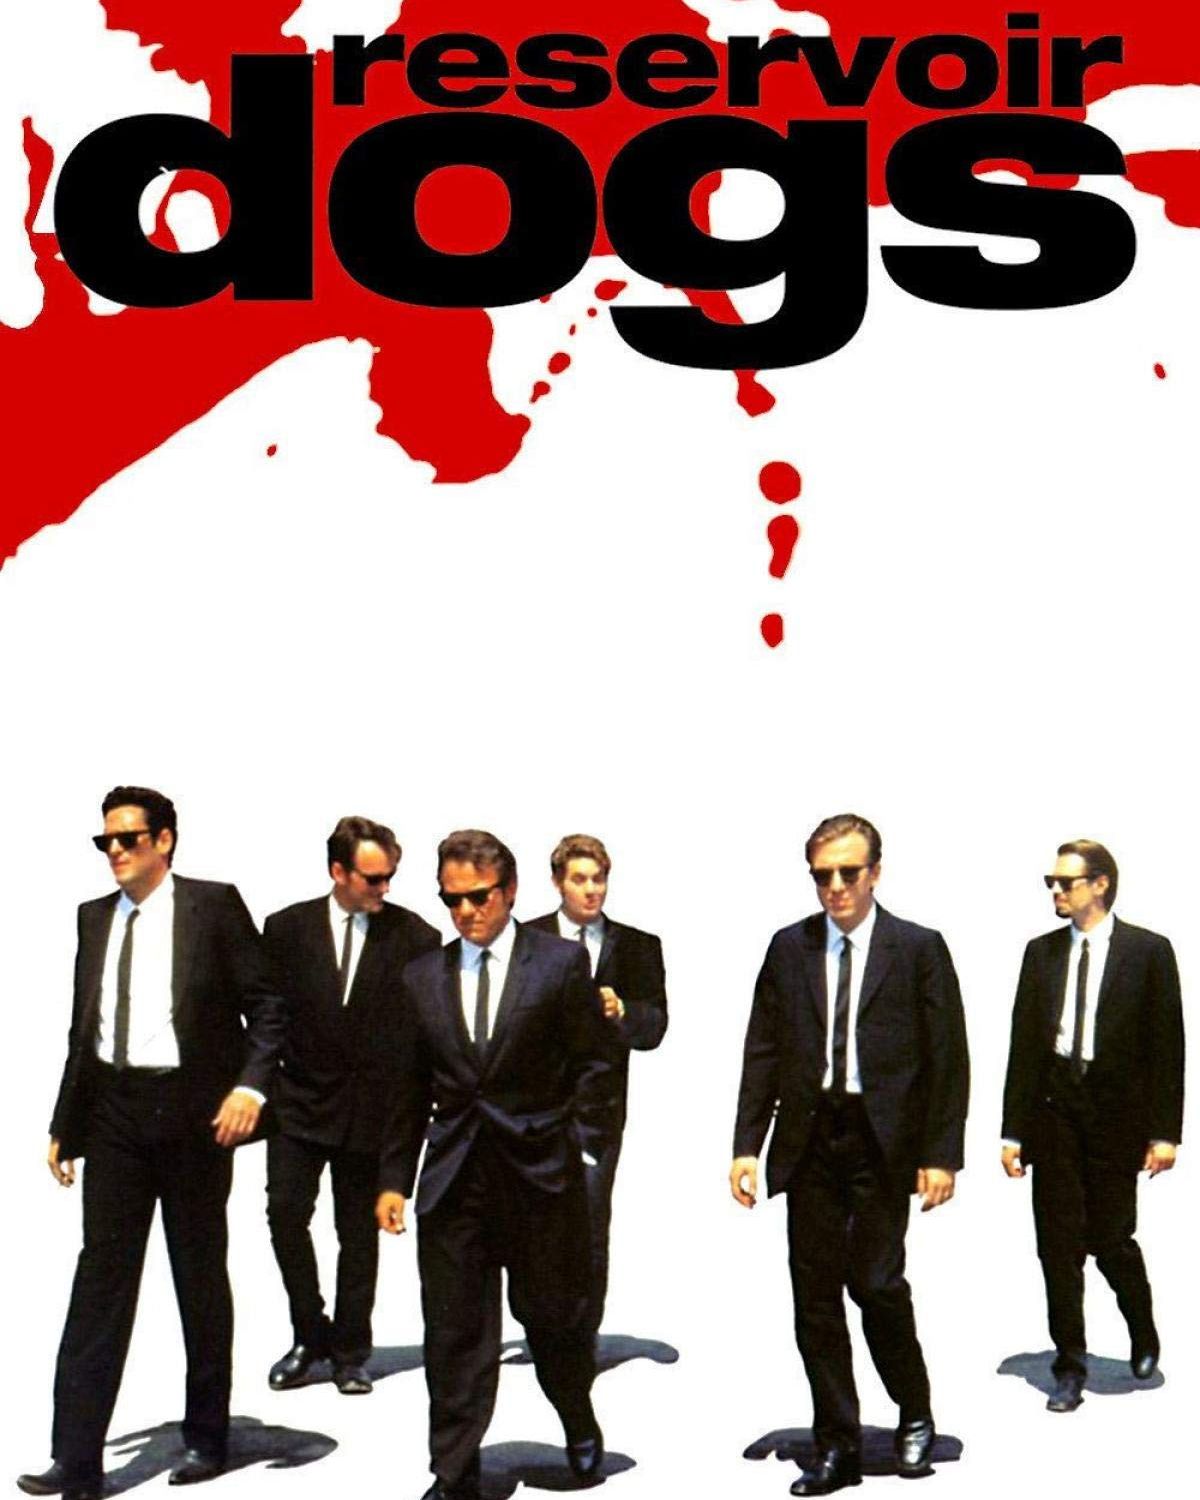 Tarantino - RESERVOIR DOGS - Cine barato y de calidad 01712777311178